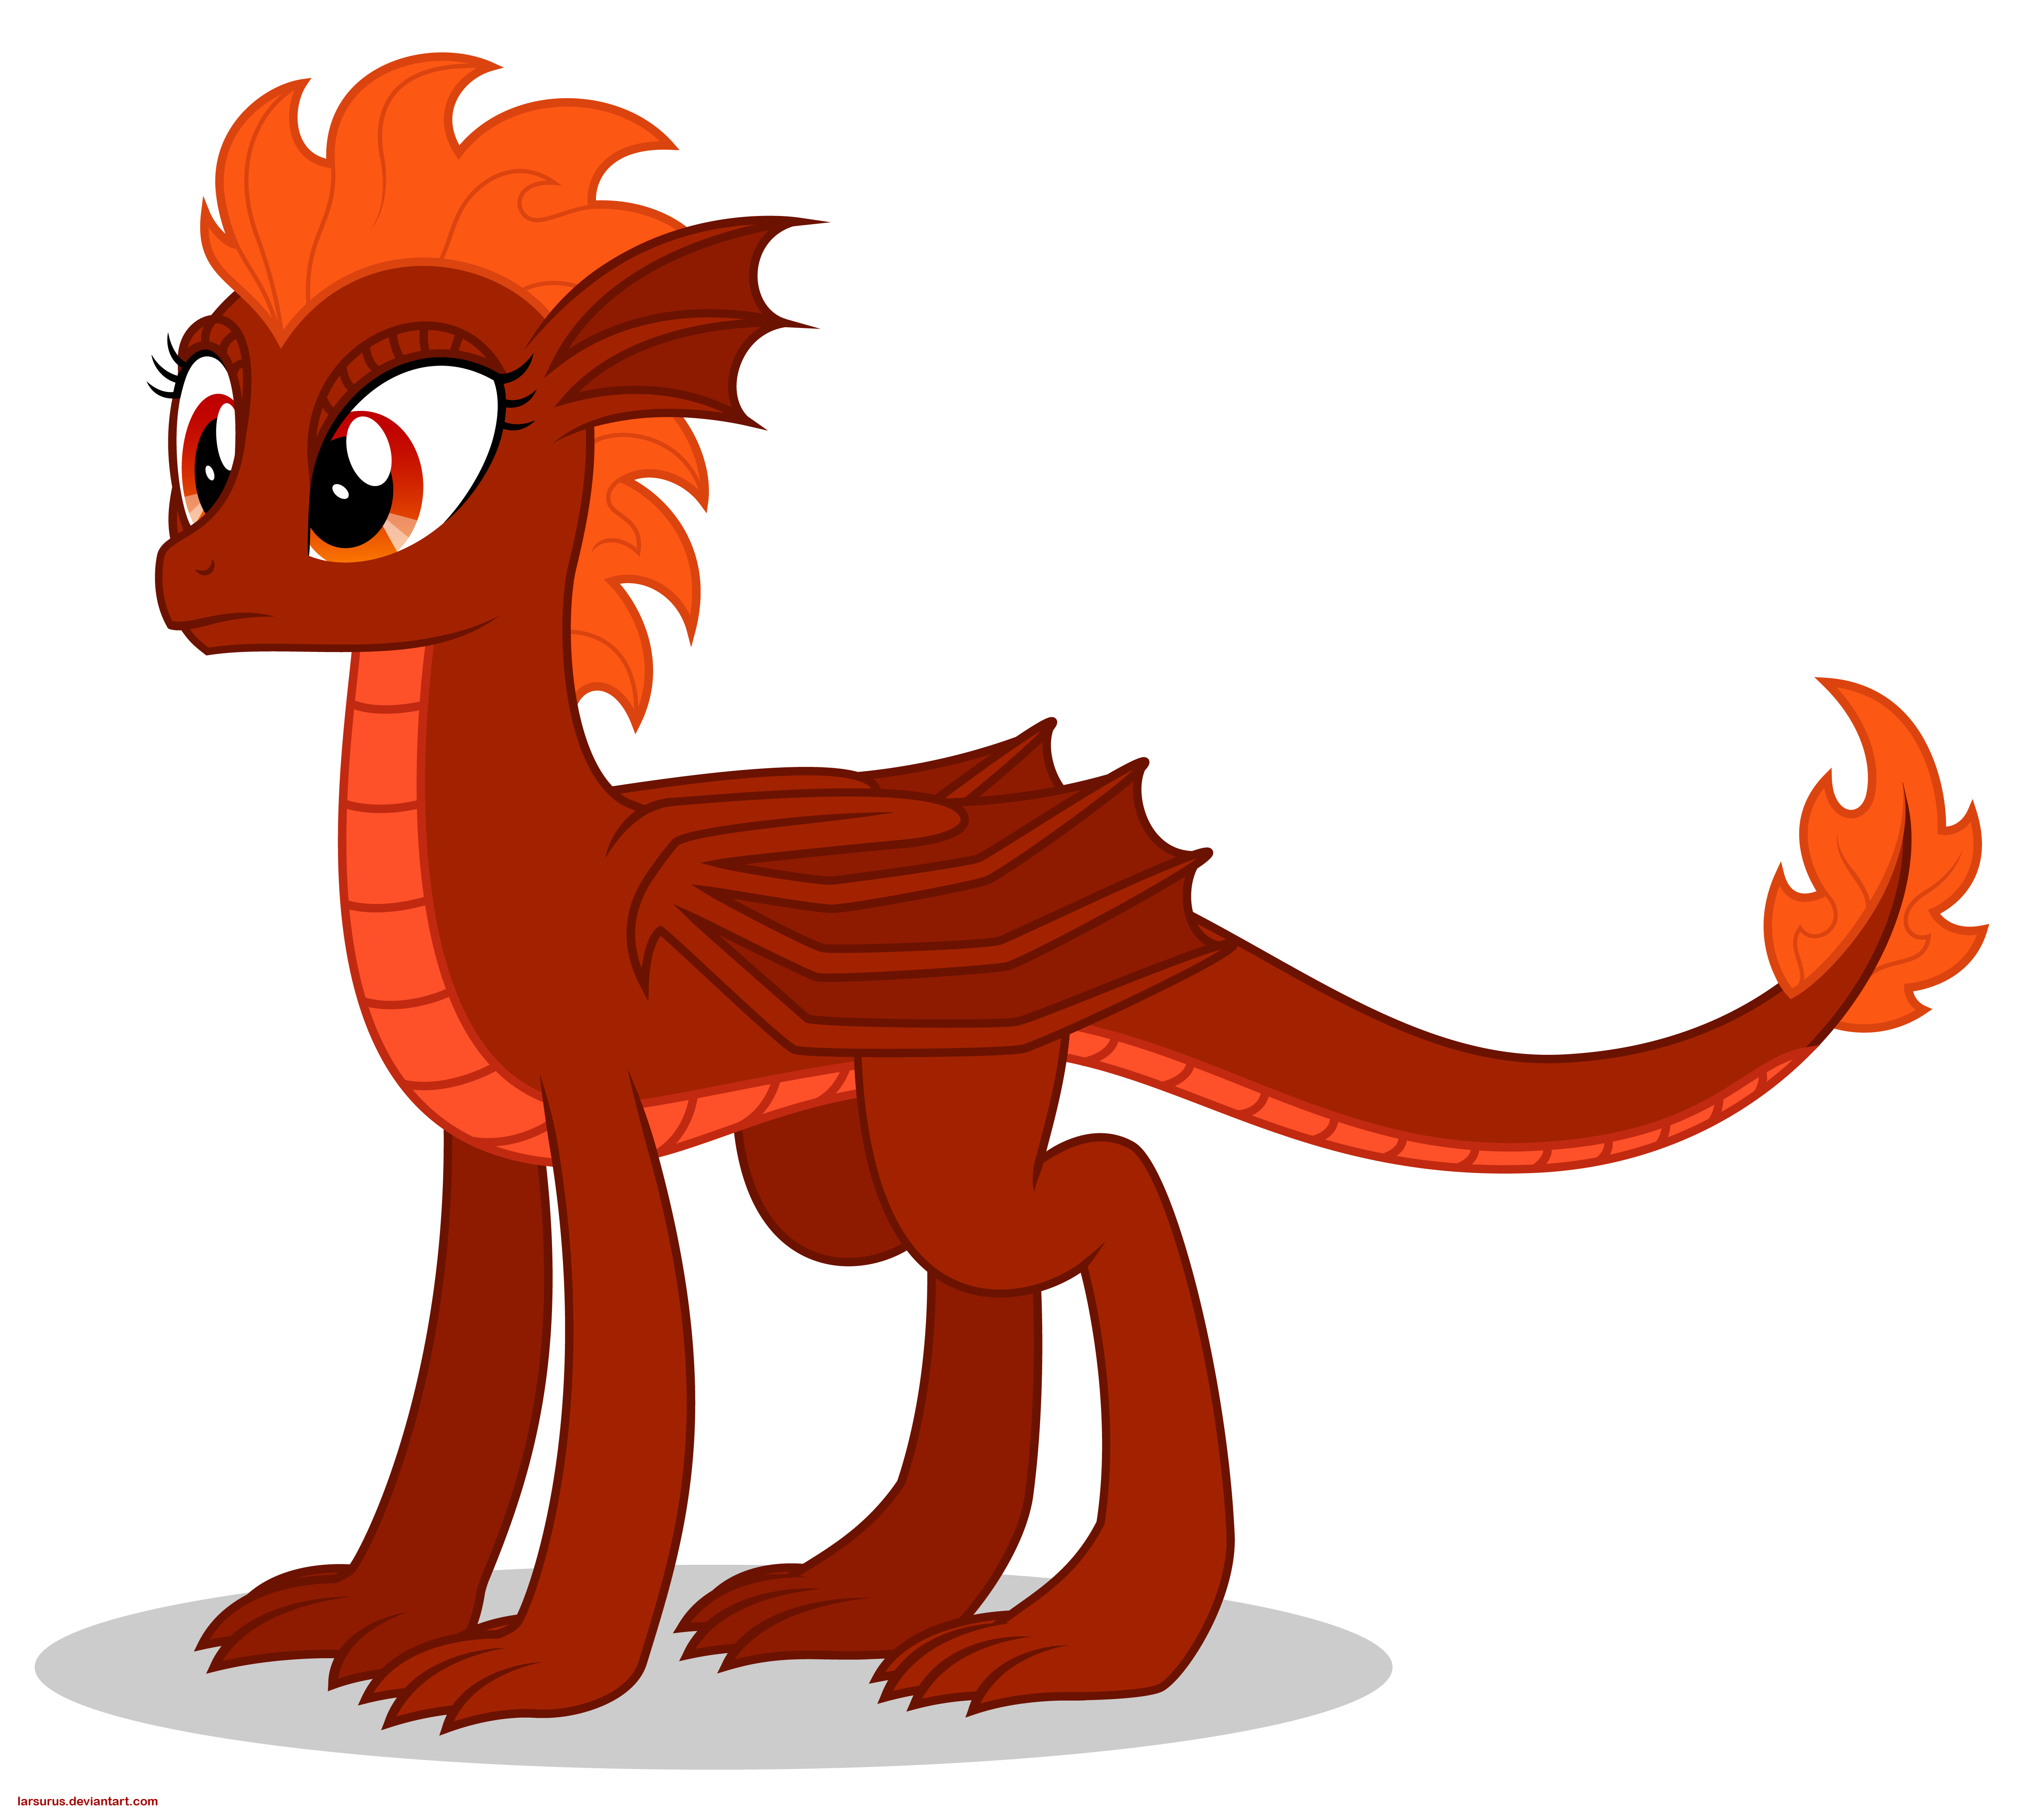 Dragon pony. МЛП драконы. Кирин дракон пони. Хвосты пони Kreator дракона. МЛП пони драконы.